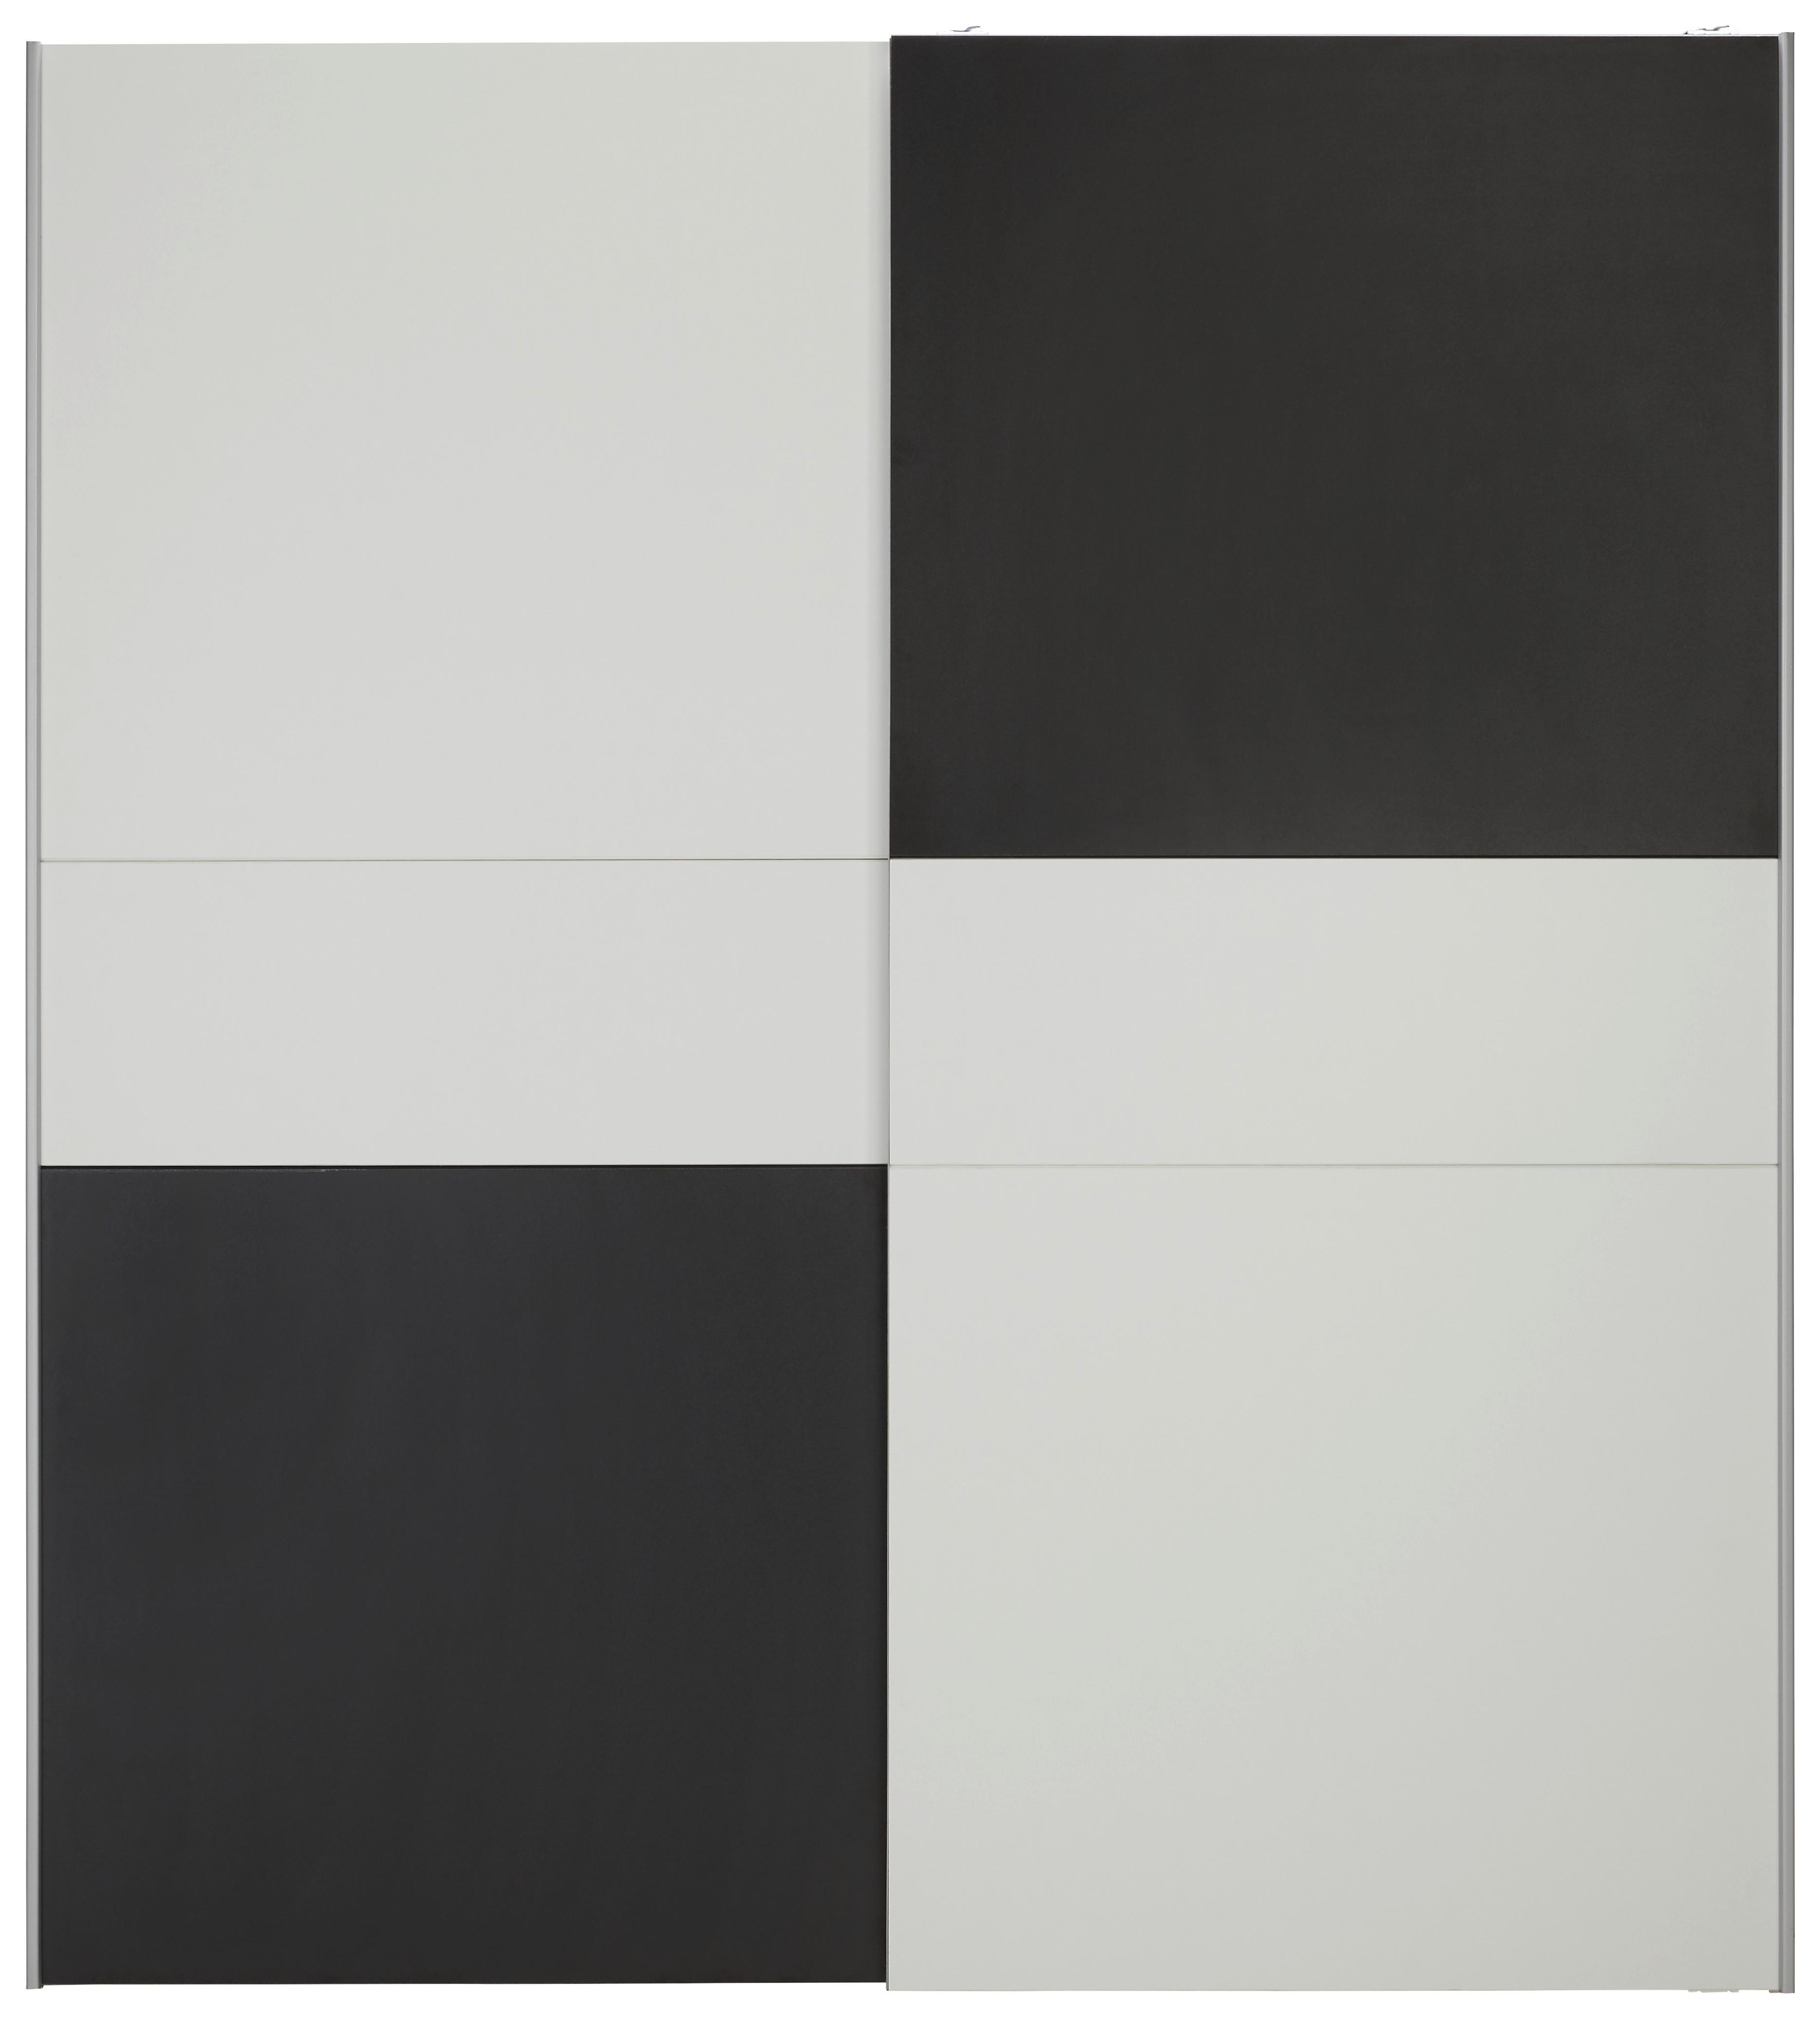 Omara Z Drsnimi Vrati Longline - aluminij/črna, Konvencionalno, kovina/umetna masa (170/191/61cm) - Modern Living